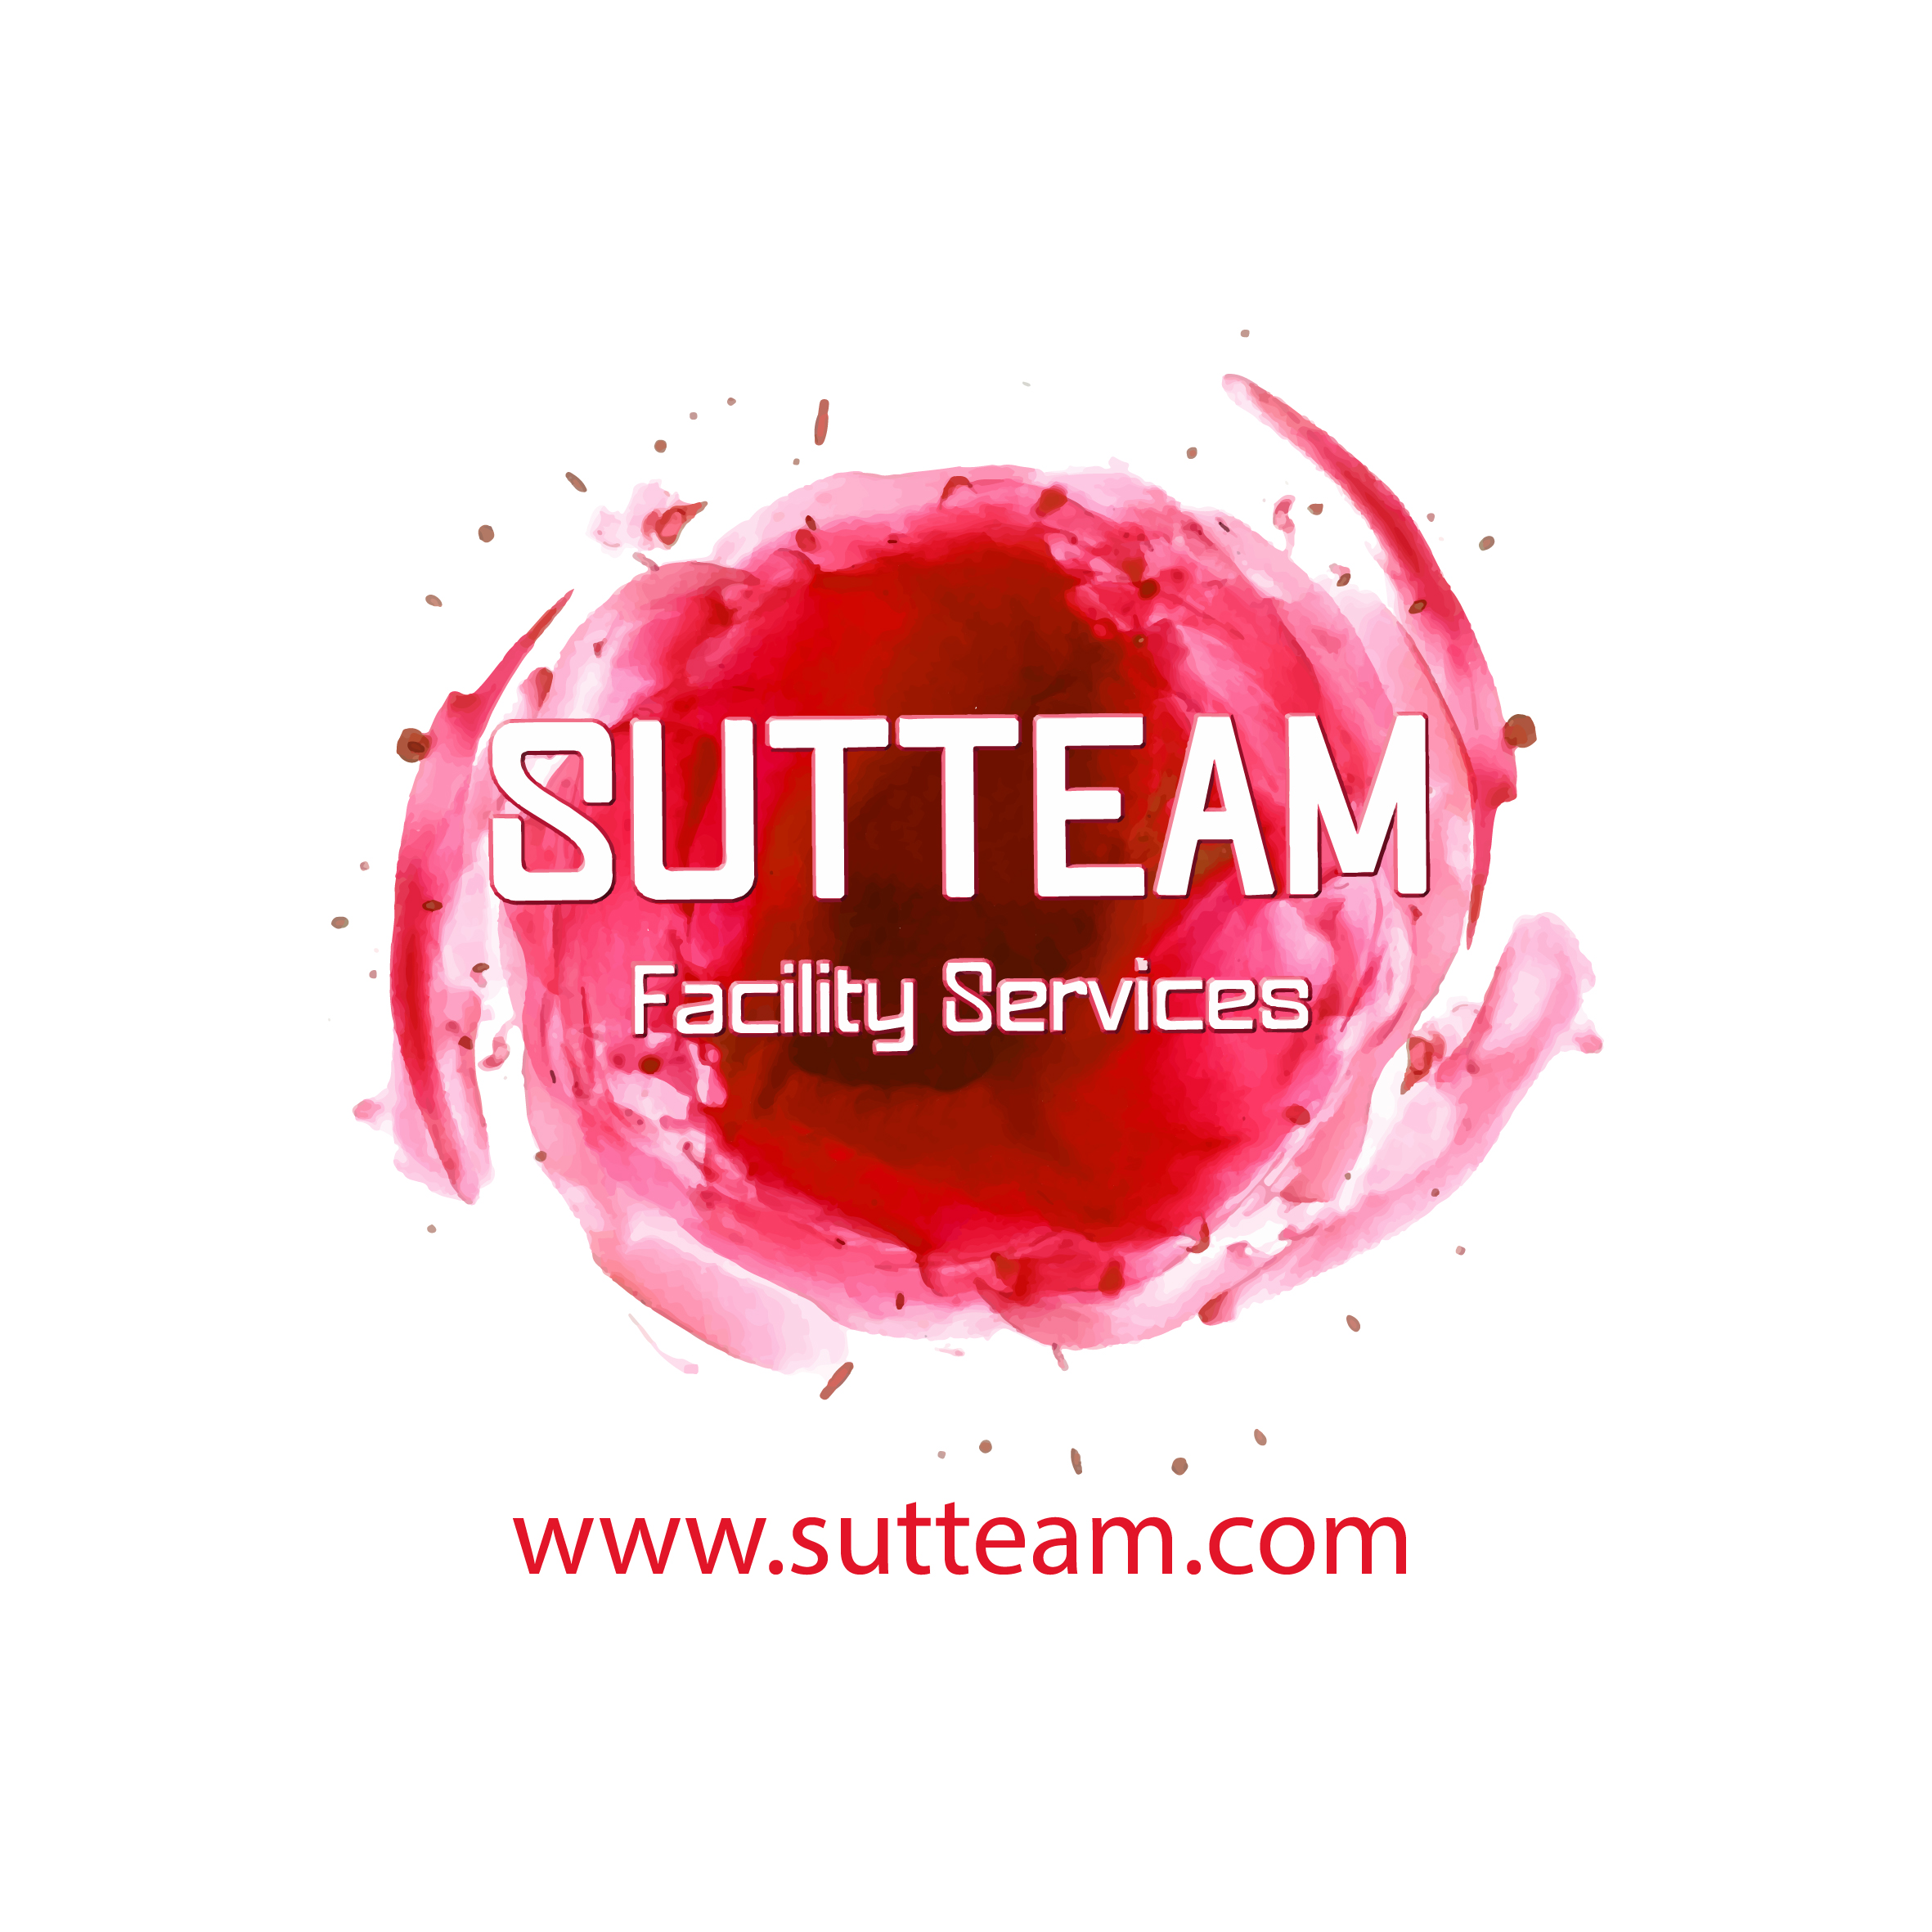 www.sutteam.com